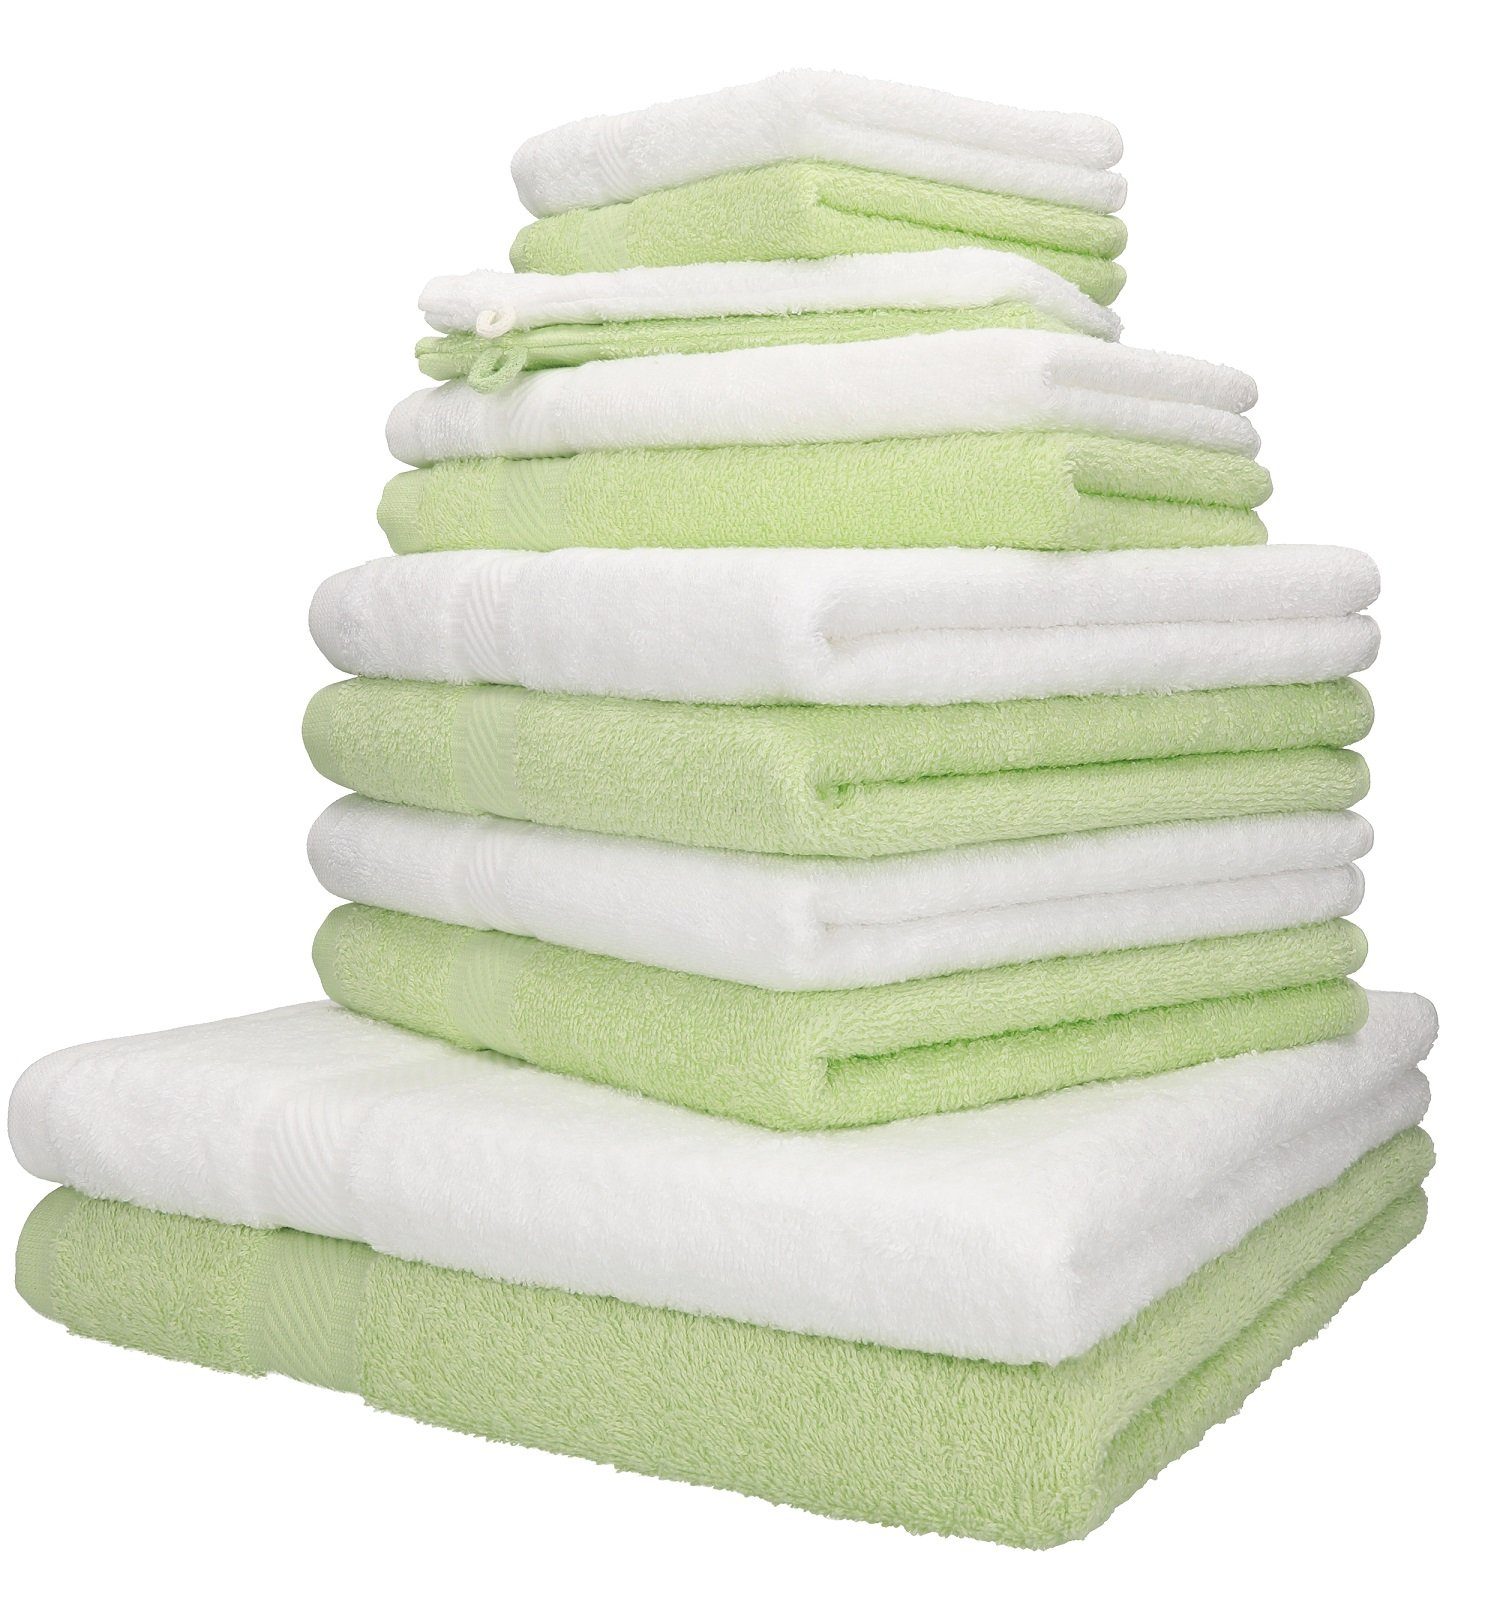 Betz Handtuch Set 12-TLG. Handtuch-Set Palermo 100% Baumwolle 2 Liegetücher 4 Handtücher 2 Gästetücher 2 Seiftücher 2 Waschhandschuhe Farbe grün und weiß, 100% Baumwolle, (12-tlg) | Handtuch-Sets